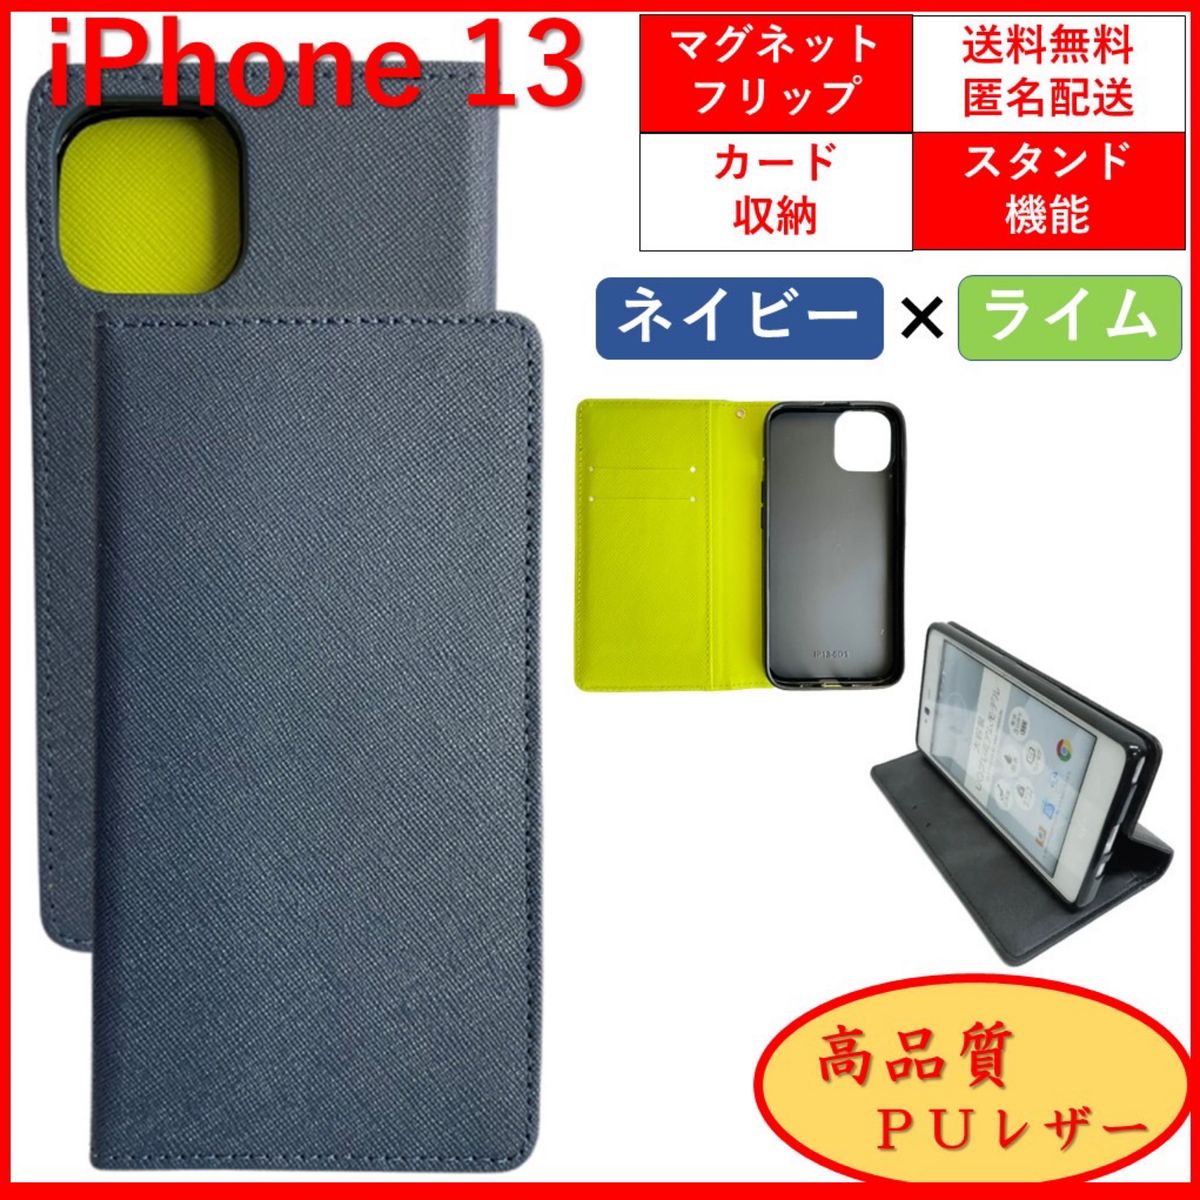 iPhone 13 アイフォン サーティーン 手帳 スマホカバー スマホケース カードポケット レザー オシャレ ネイビー/ライム